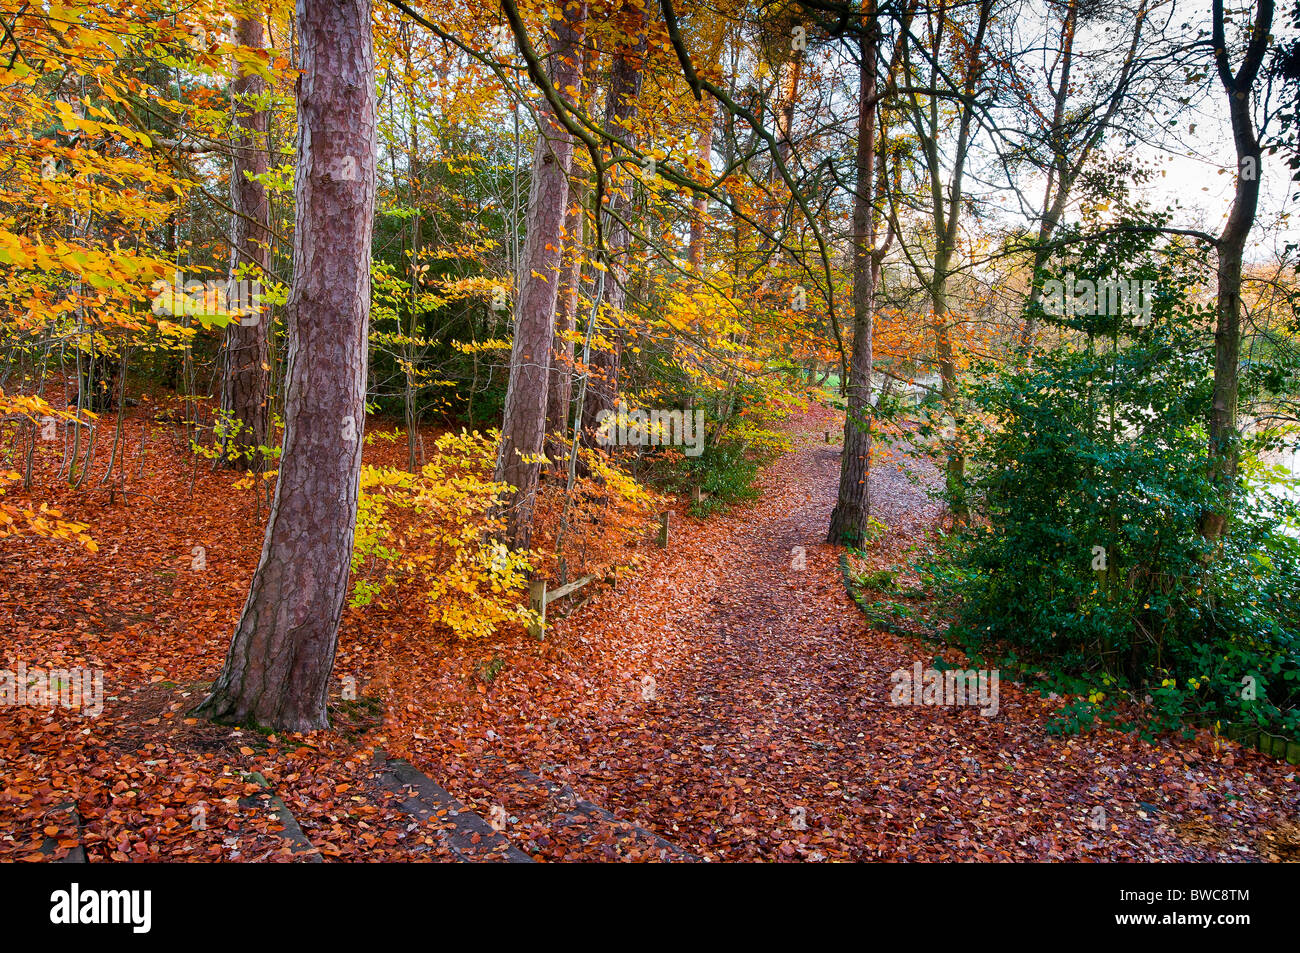 Il legno della foresta autunno autunno caldo colore rosso arancio giallo percorso di foglie degli alberi Foto Stock